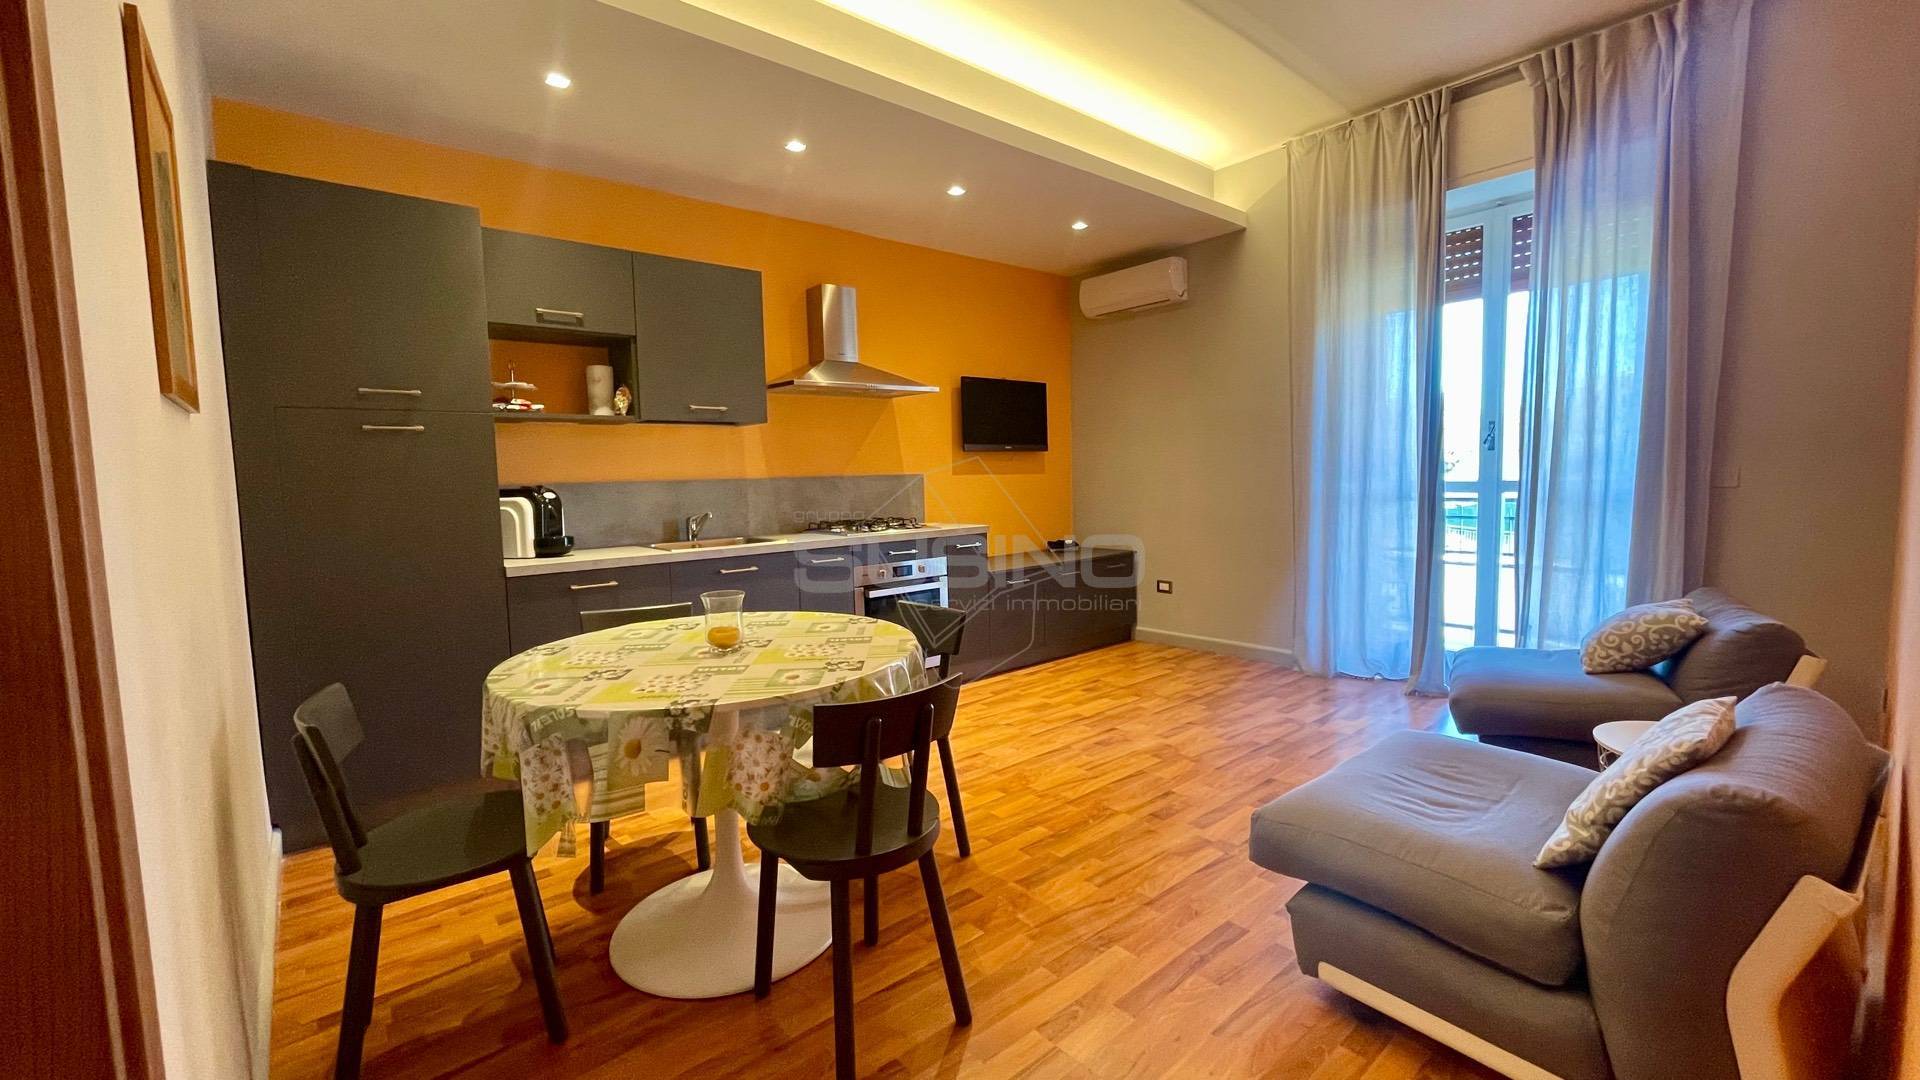 Appartamento in affitto a Siracusa, 2 locali, zona Località: SanGiovanni, prezzo € 600 | PortaleAgenzieImmobiliari.it